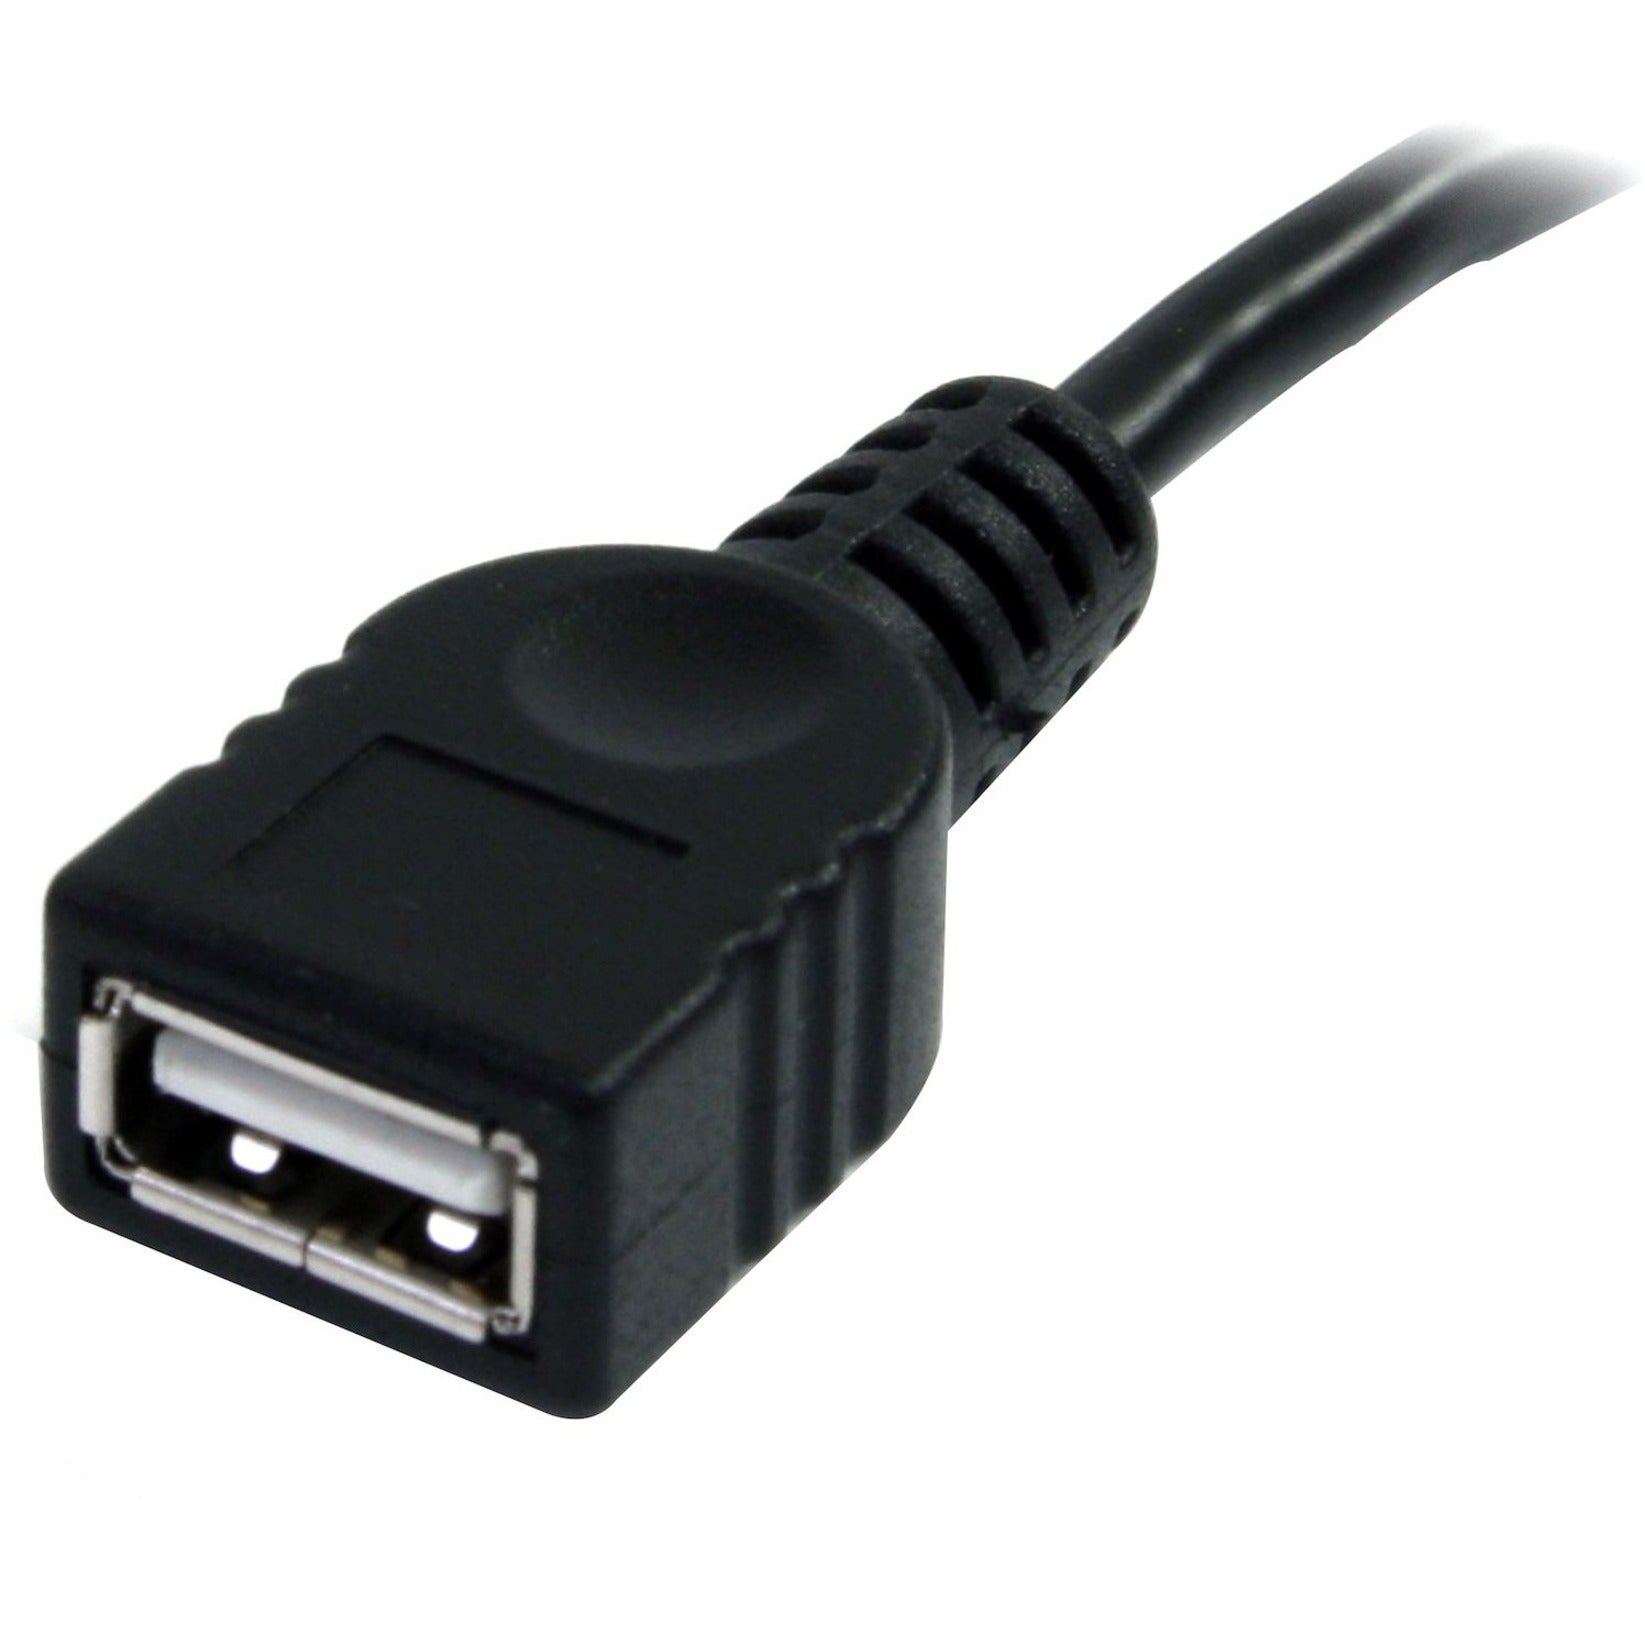 StarTech.com كابل تمديد USB 2.0 أسود بطول 3 أقدام A إلى A - ذكر/أنثى، مرن، مصبوب، إغاثة الإجهاد، سرعة نقل البيانات 480 ميغابت في الثانية